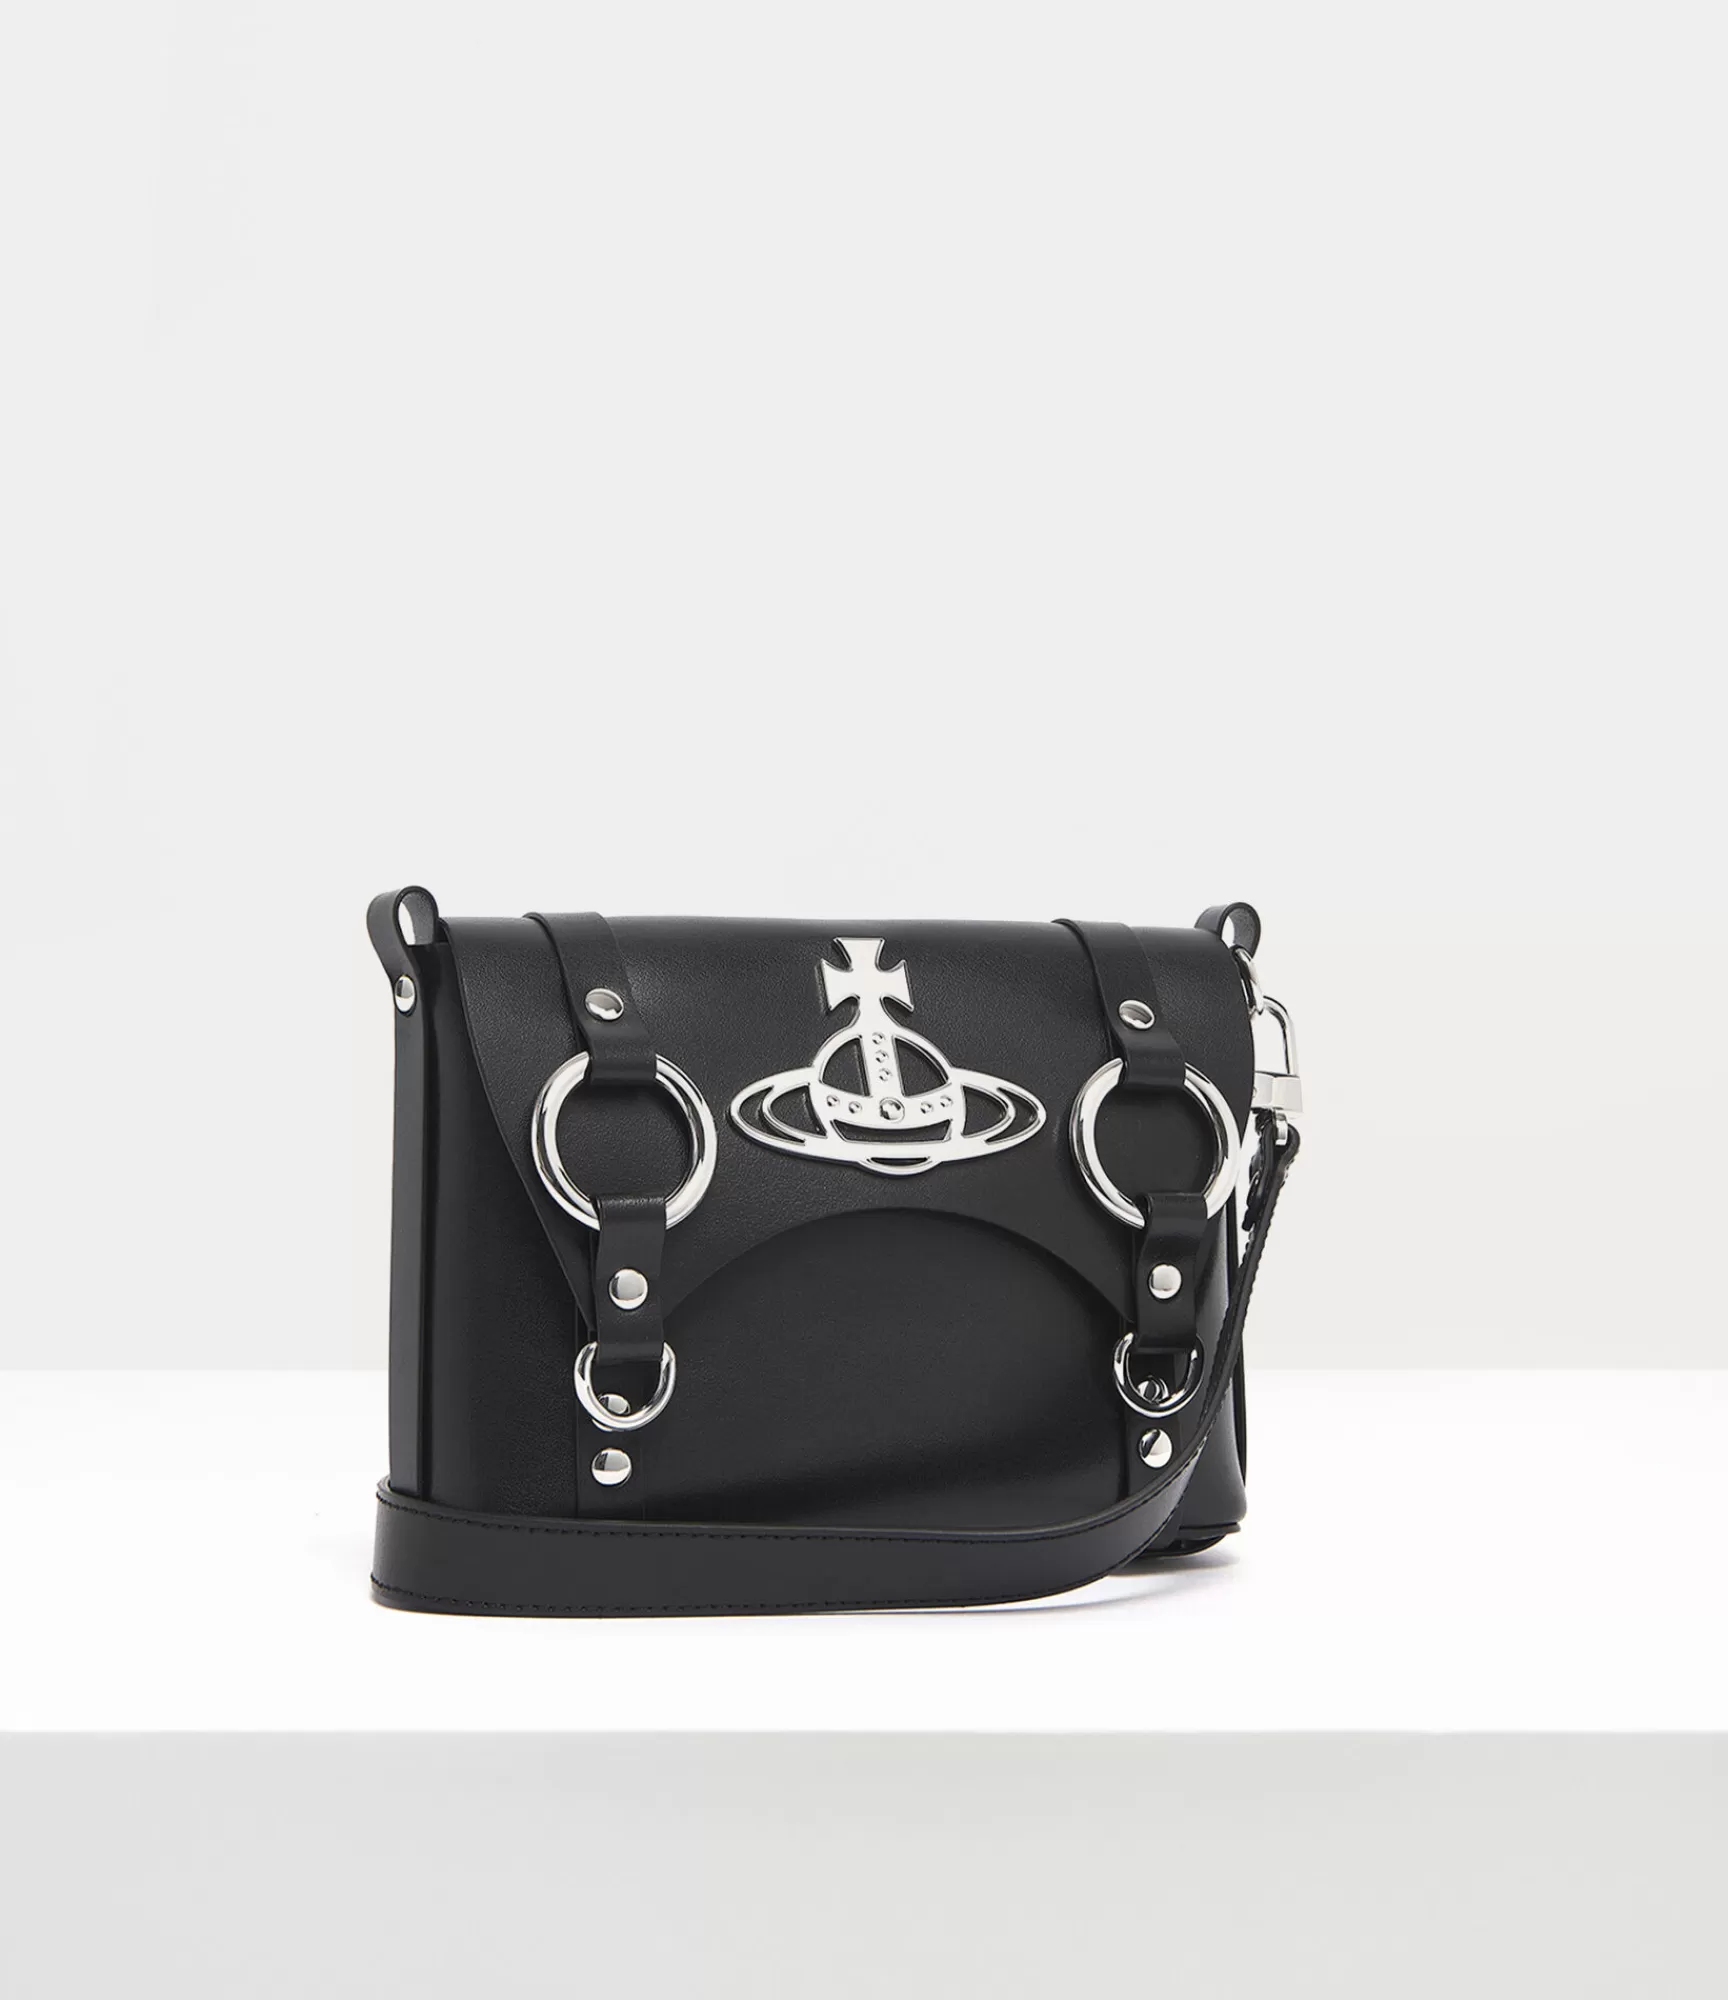 Vivienne Westwood Crossbody Bags*Crossbody bag Black